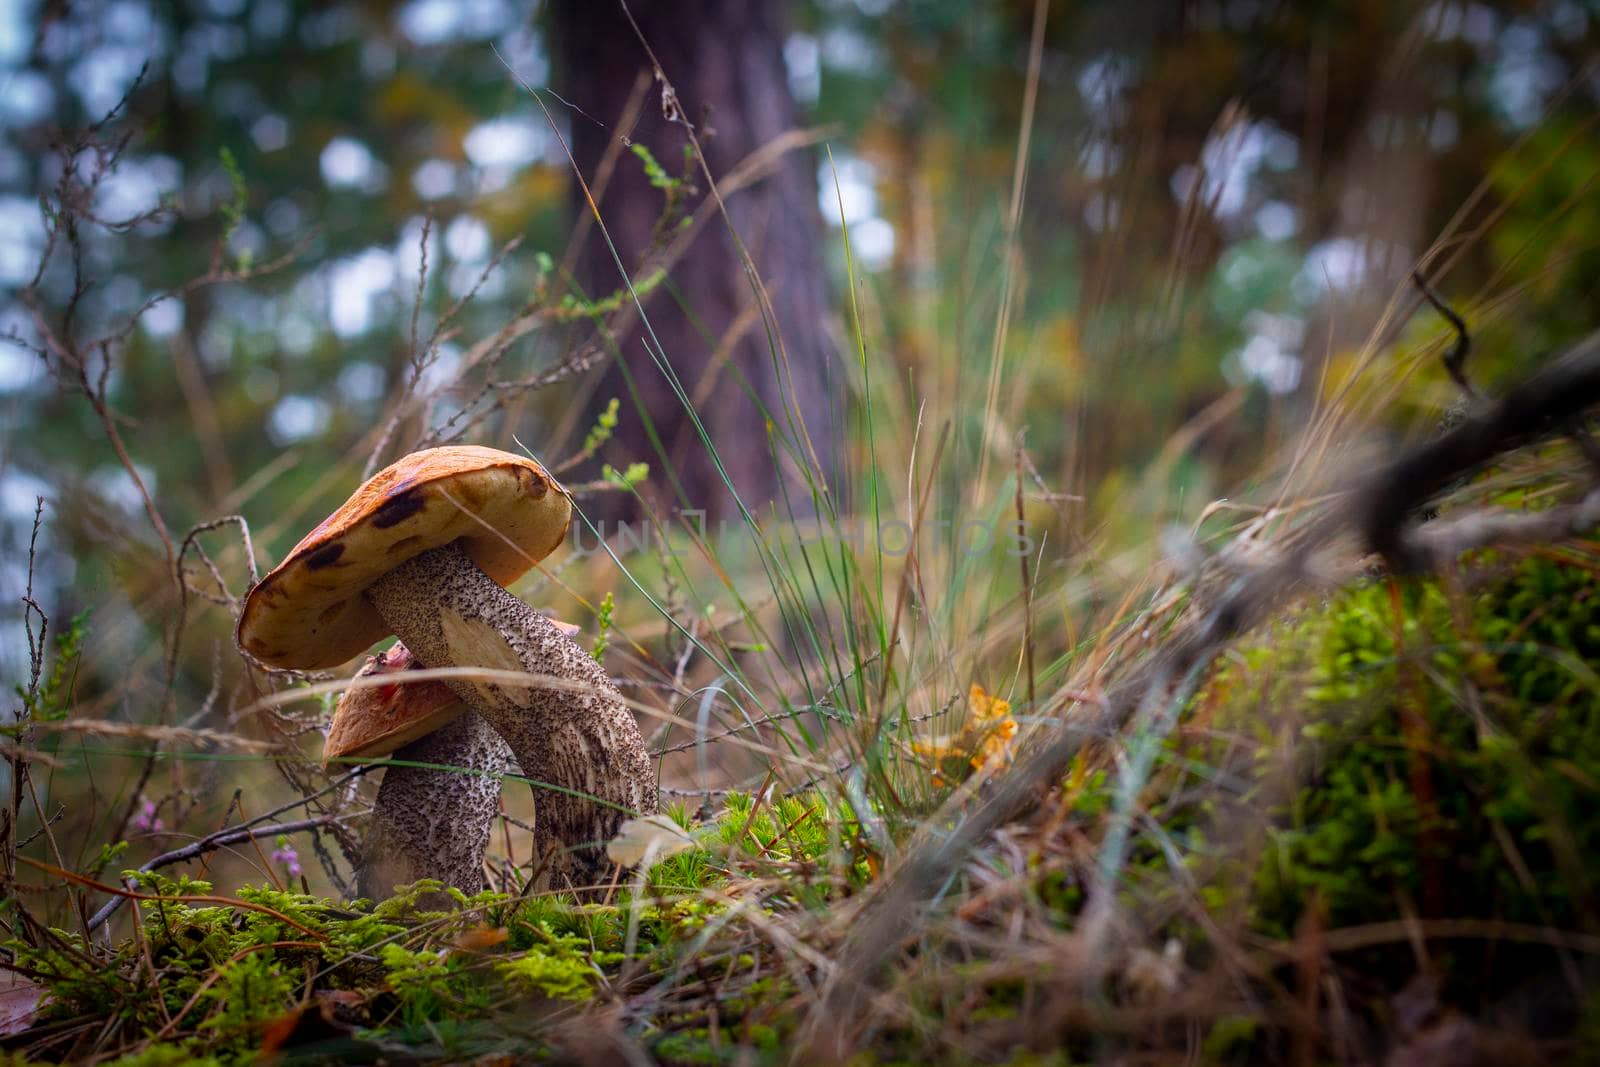 Two boletus edulis mushrooms in wood. Orange cap mushrooms in forest